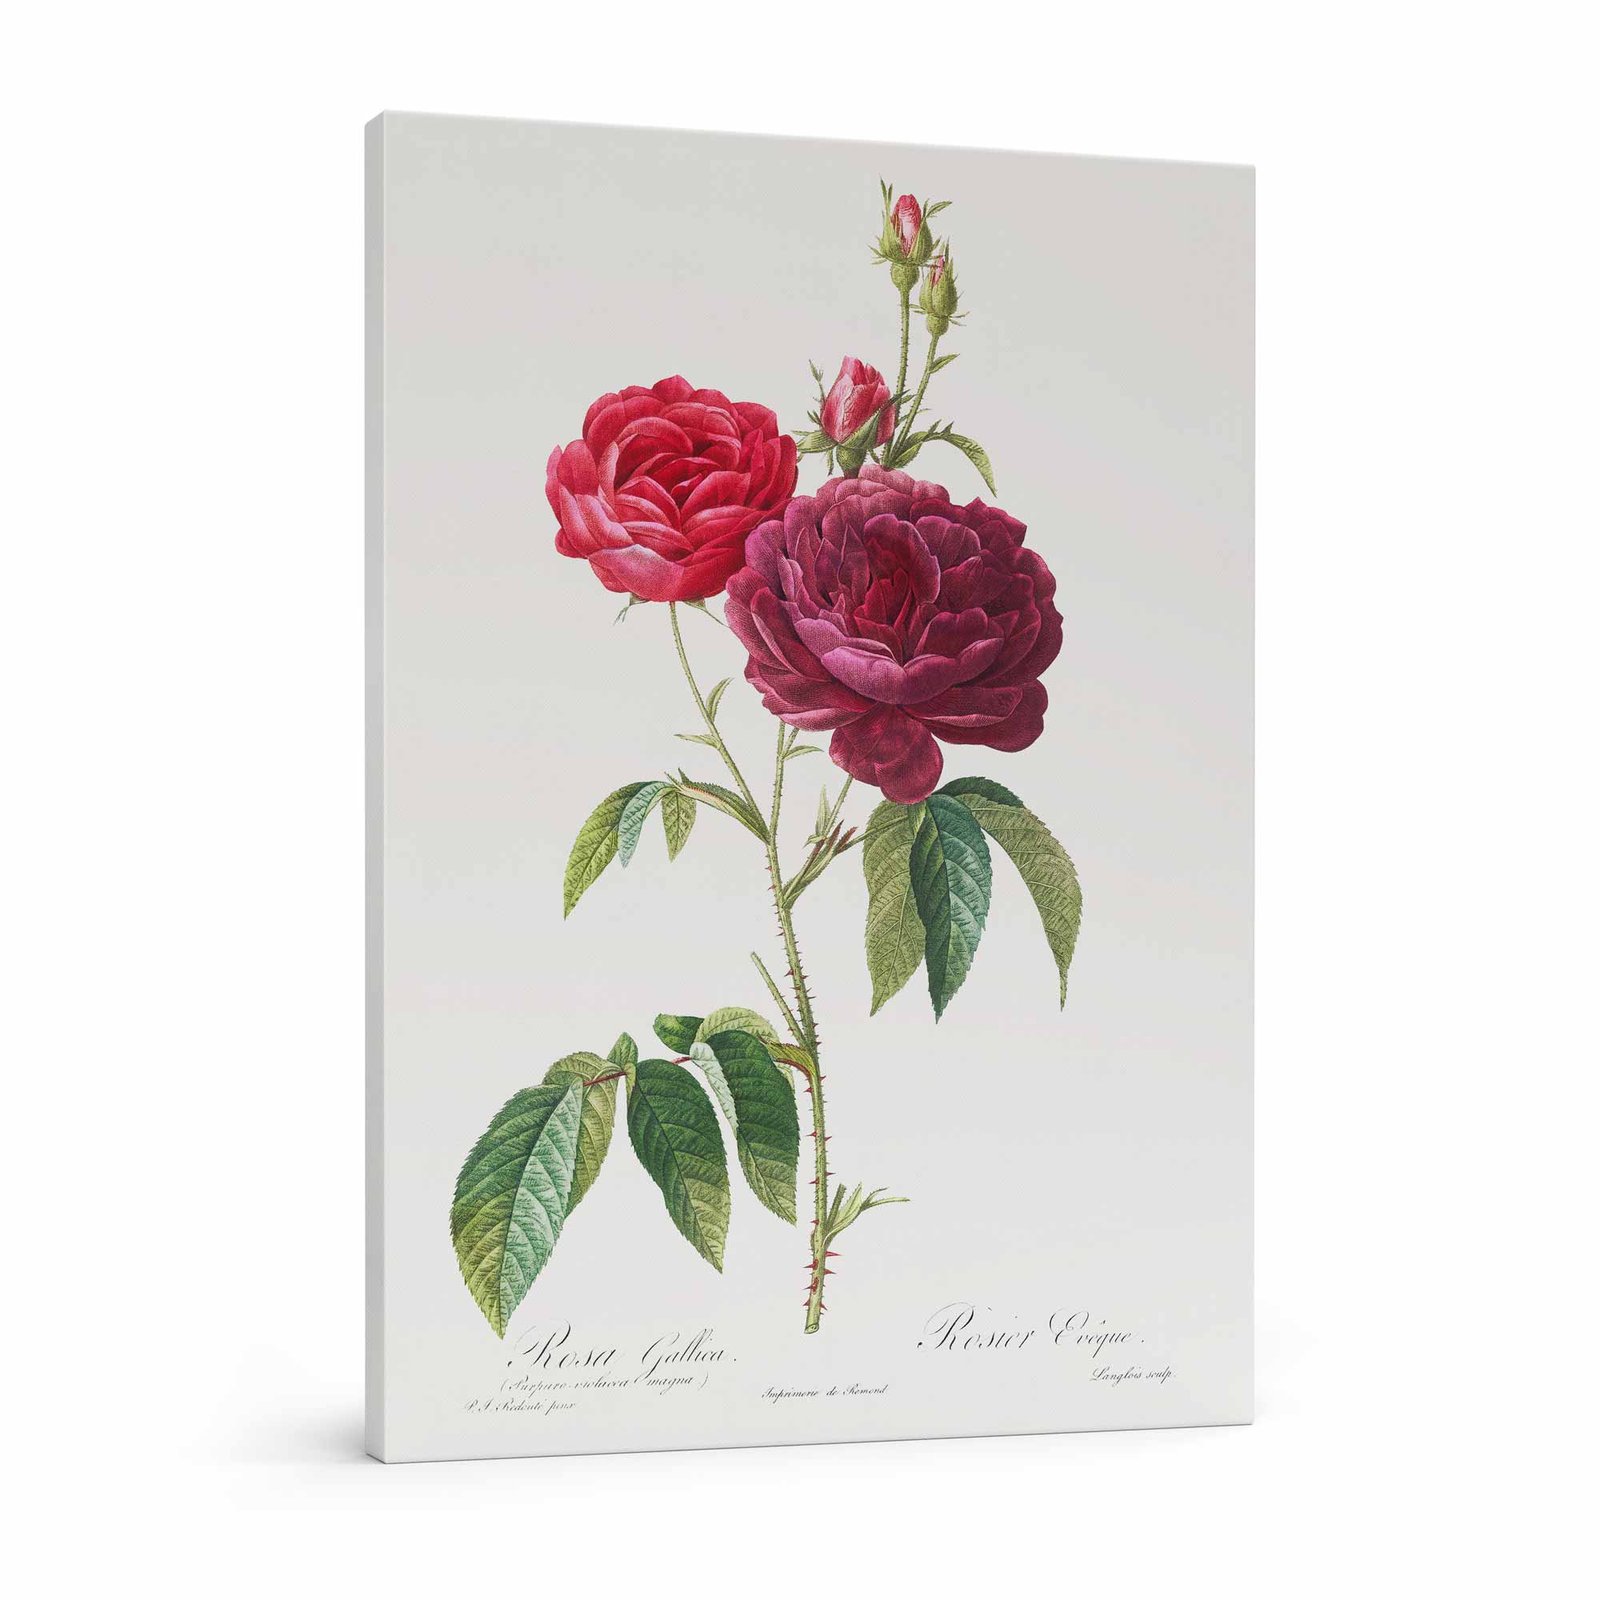 62 paveikslas ant drobes reprodukcija - Violetinė prancūziška rožė - Pierre-Joseph Redouté